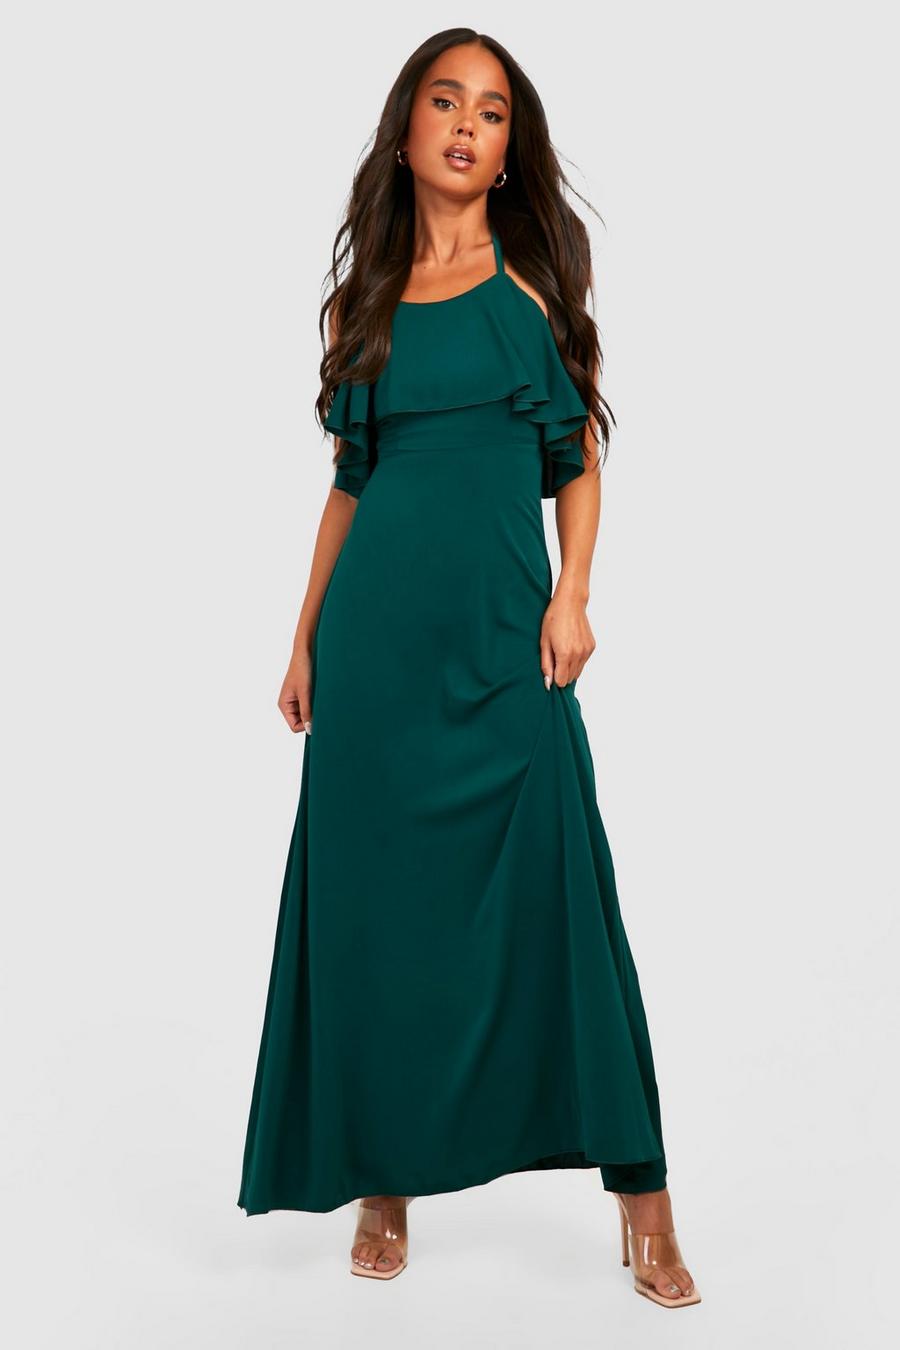 טורקיז green שמלת מקסי פטיט מסאטן עם צווארון קולר ומלמלה